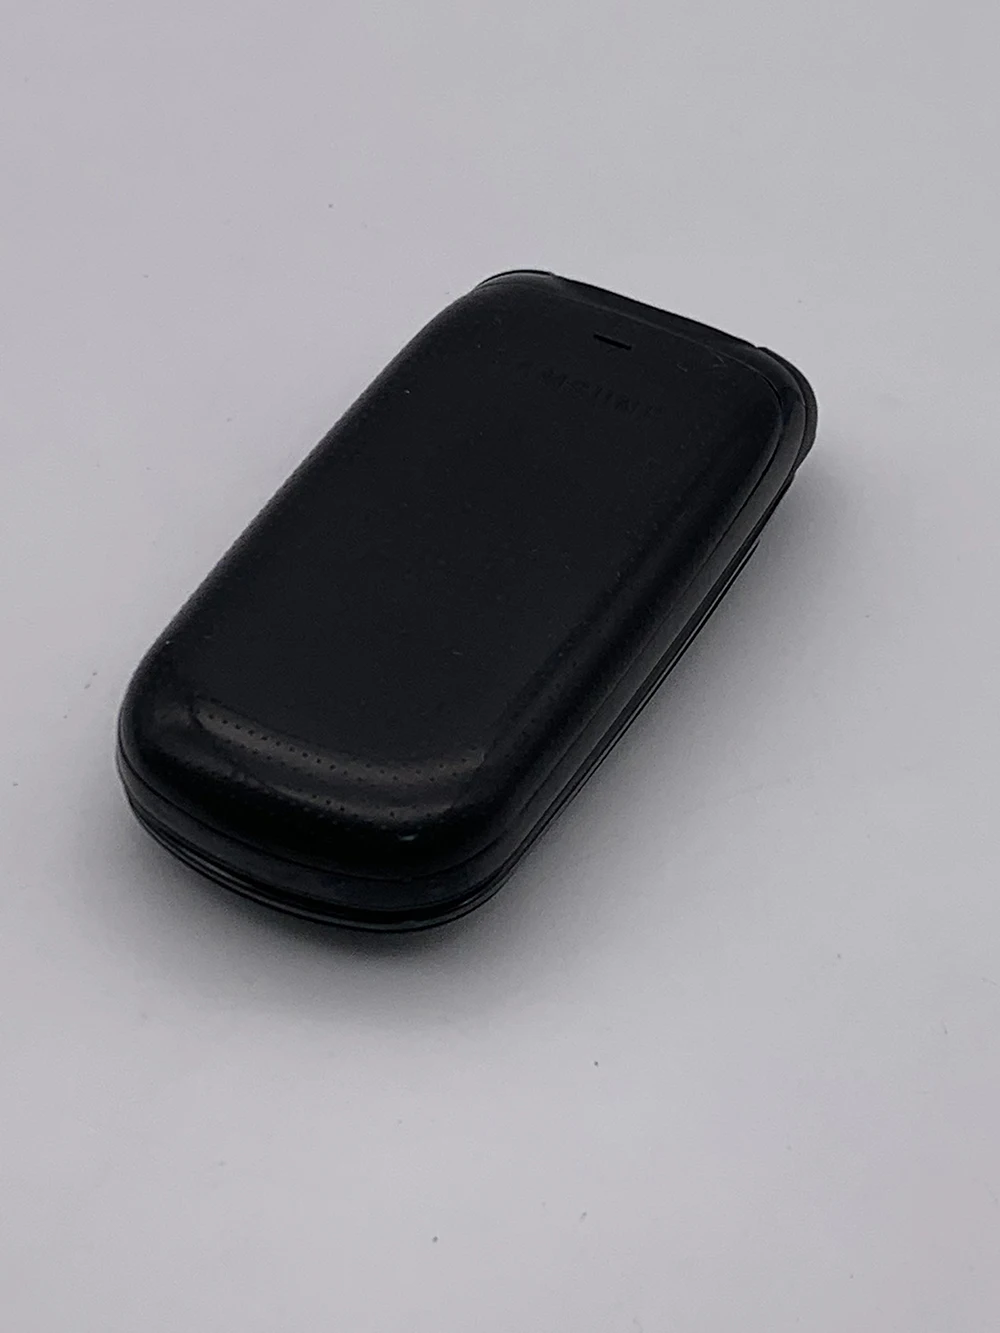 Оригинальный Мобильный Телефон Samsung E1150 с 1,43-дюймовым Экраном и Аккумулятором 800 мАч GSM 900 / 1800 Разблокированный Мобильный Телефон 3